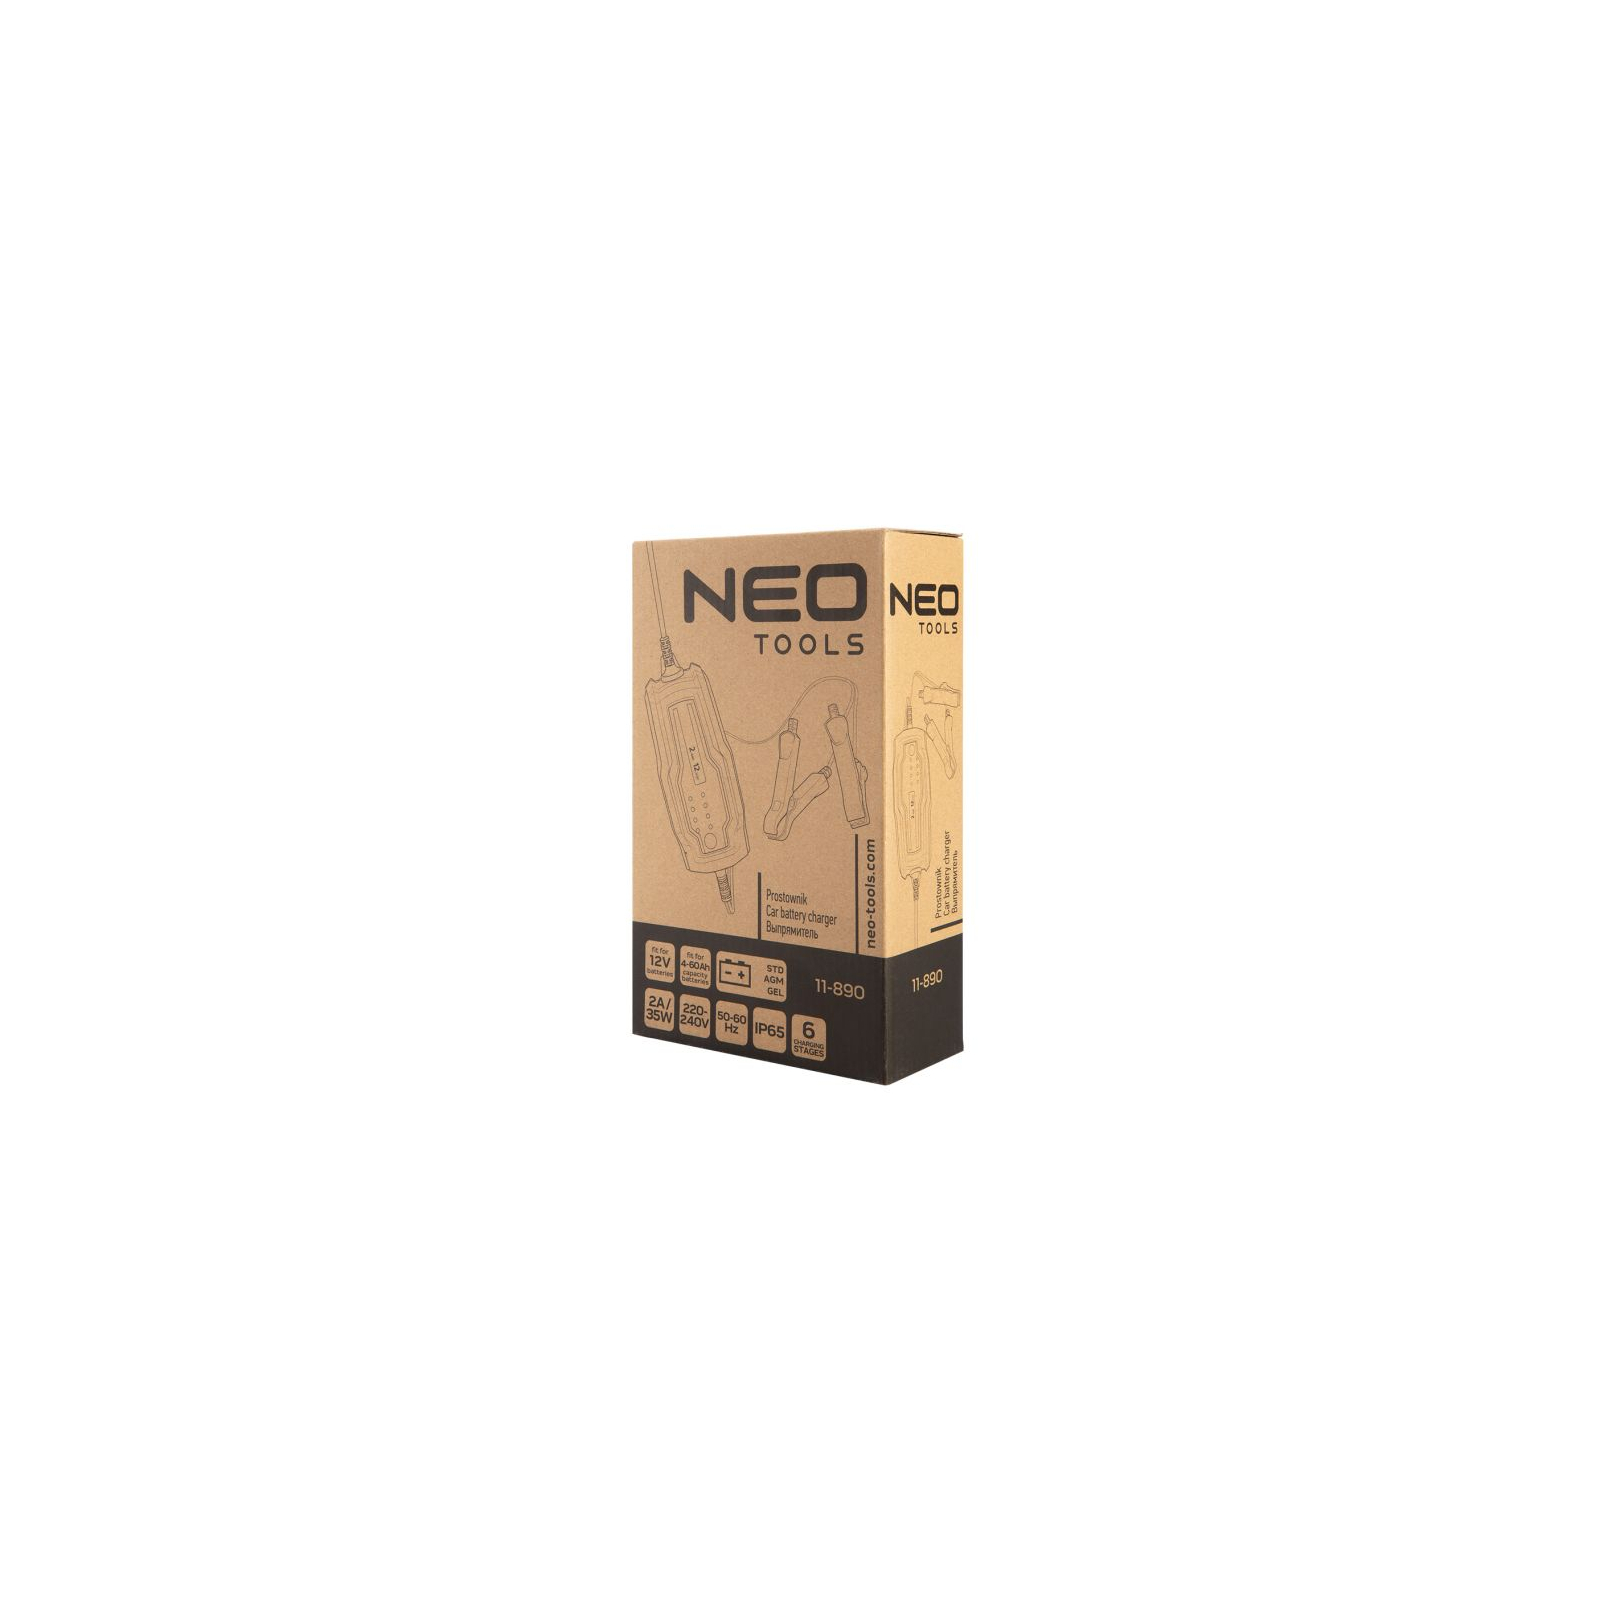 Зарядное устройство для автомобильного аккумулятора Neo Tools 2А/35Вт, 4-60Ач, для кислотних/AGM/GEL (11-890) изображение 2